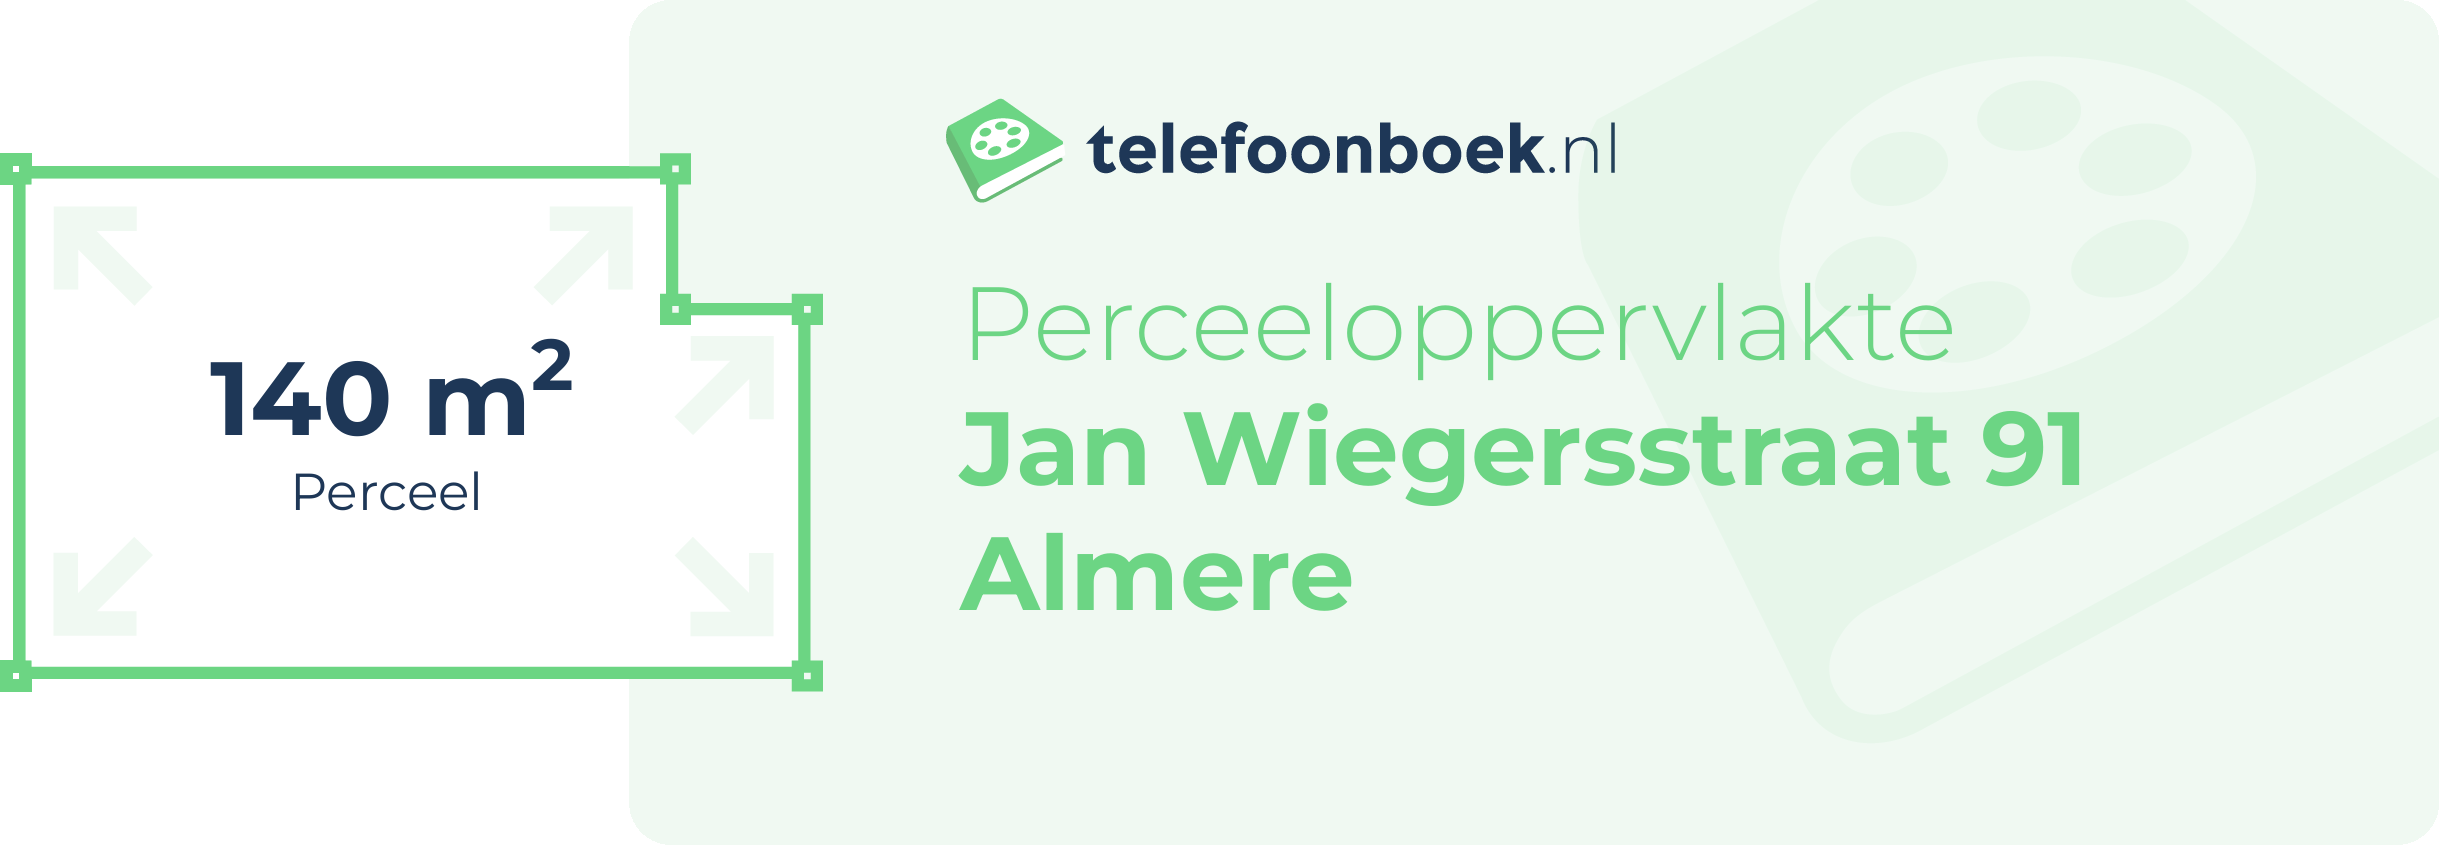 Perceeloppervlakte Jan Wiegersstraat 91 Almere